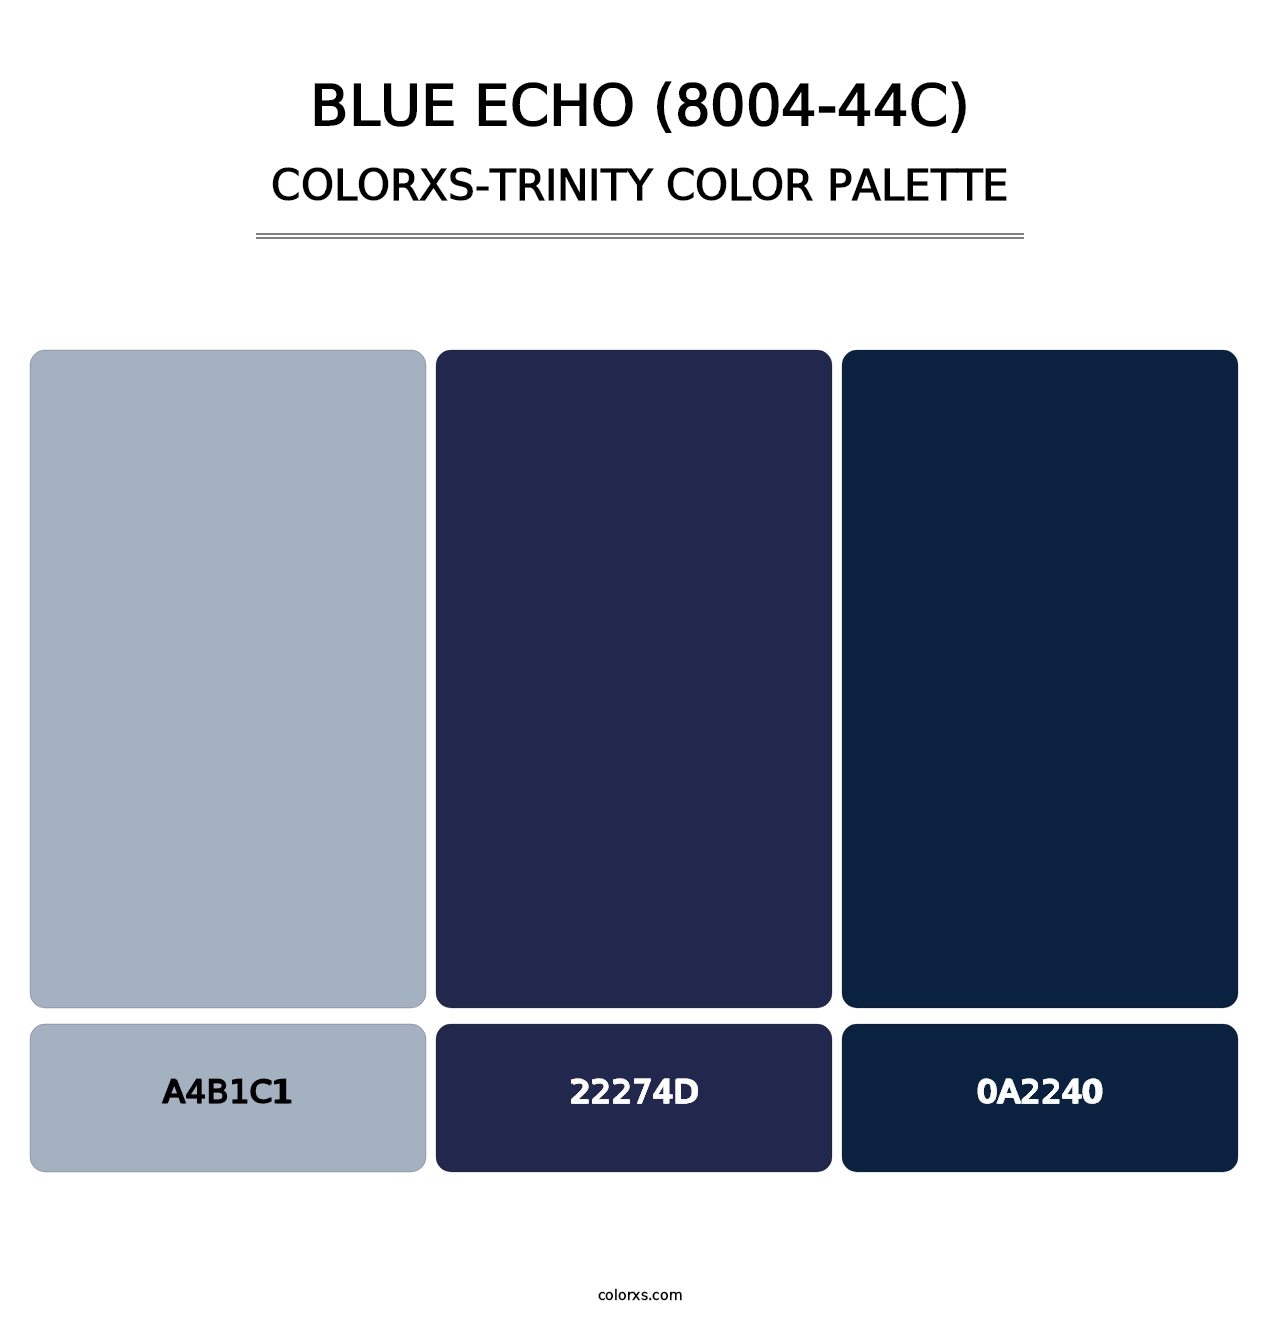 Blue Echo (8004-44C) - Colorxs Trinity Palette